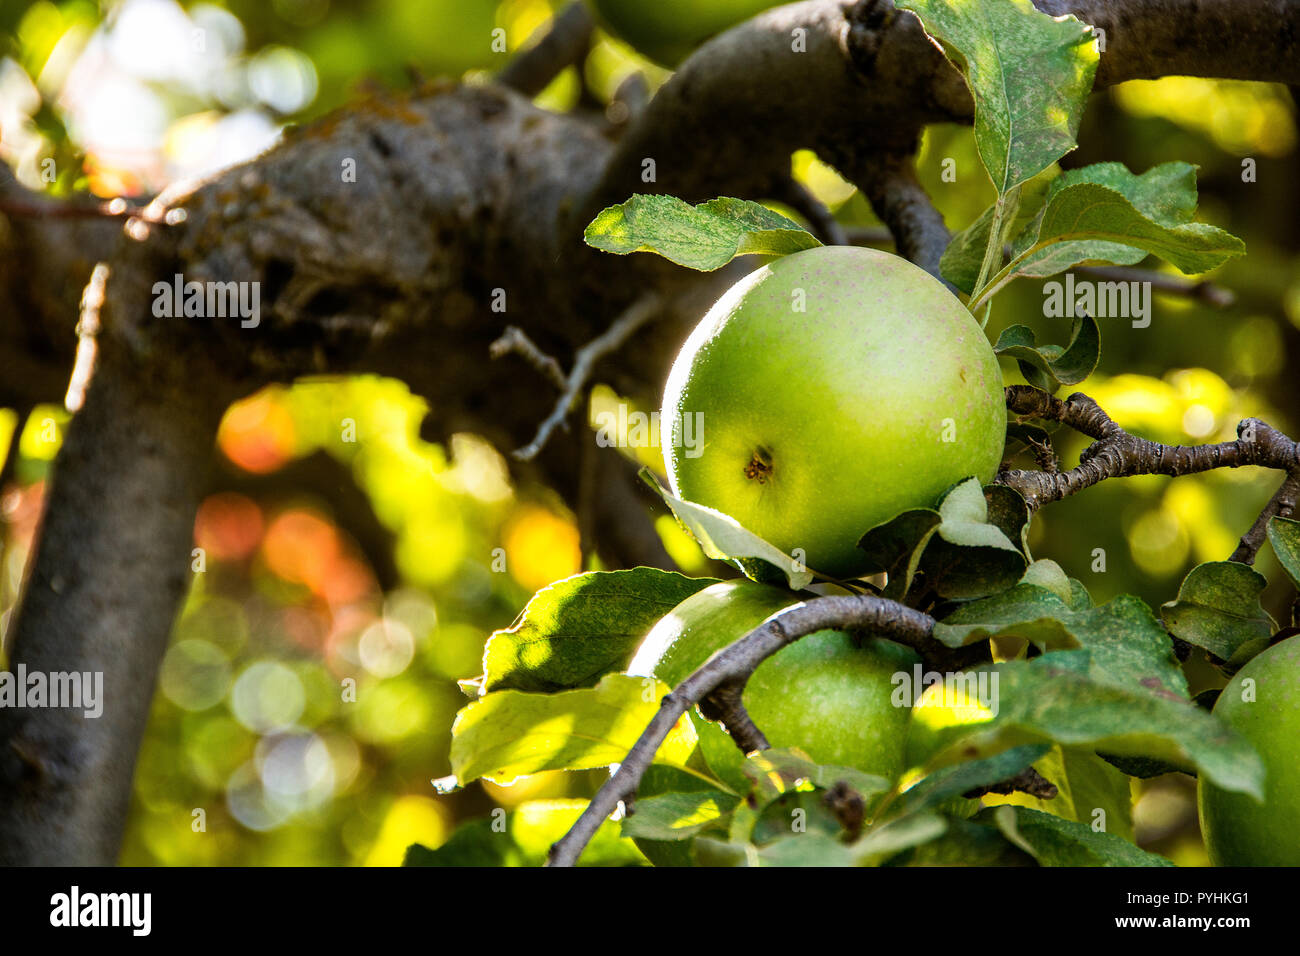 Green apples growing on an apple tree; Oak Glen, California, U.S.A. Stock Photo